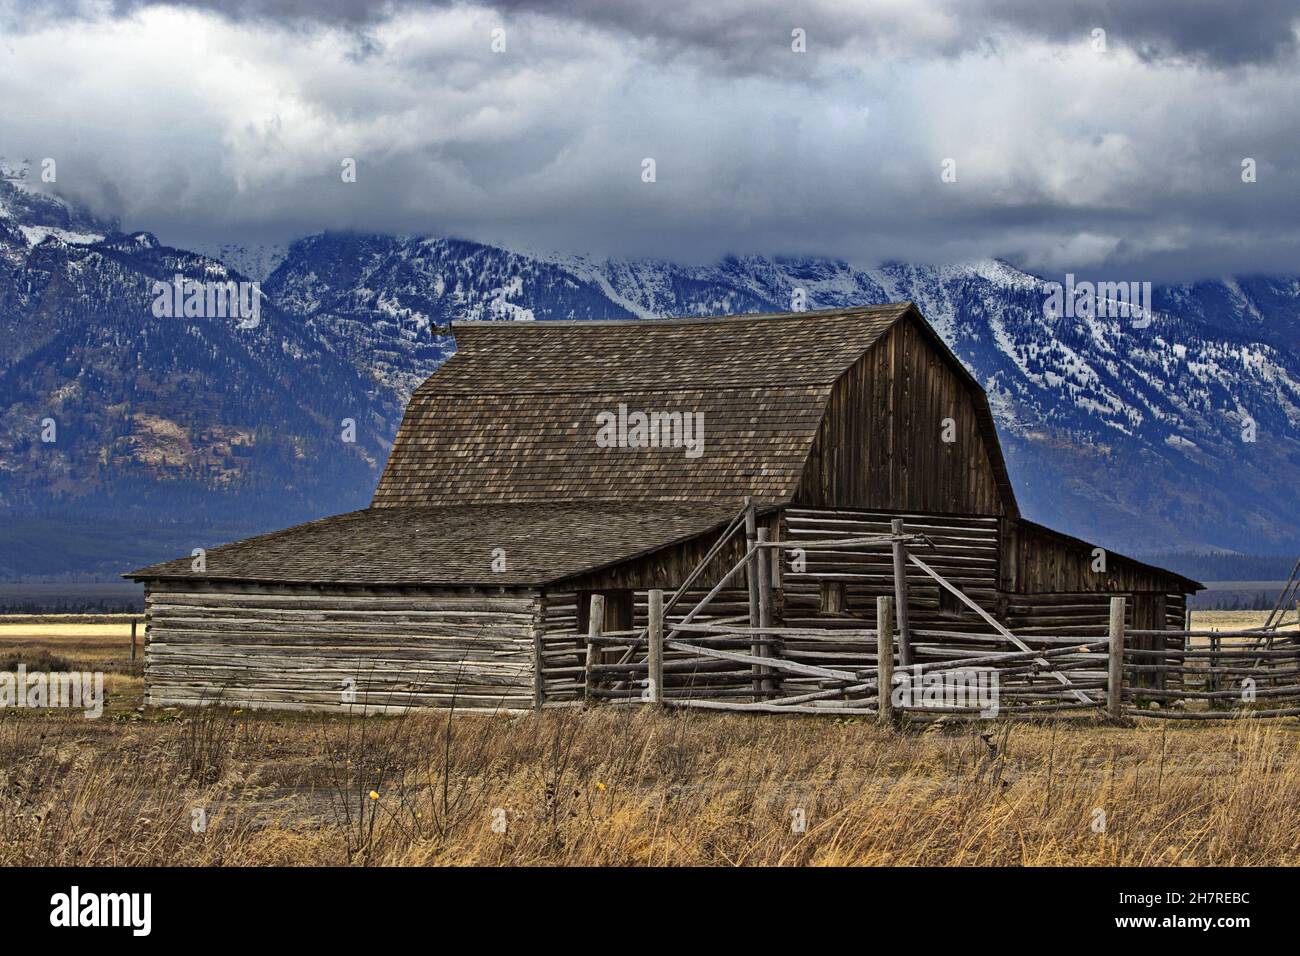 Le célèbre site historique de Molton Barn of Mormon Row, situé dans le parc national de Grand Teton, dans le Wyoming, reflète le passé de la maison.Toile de fond de Teton Banque D'Images